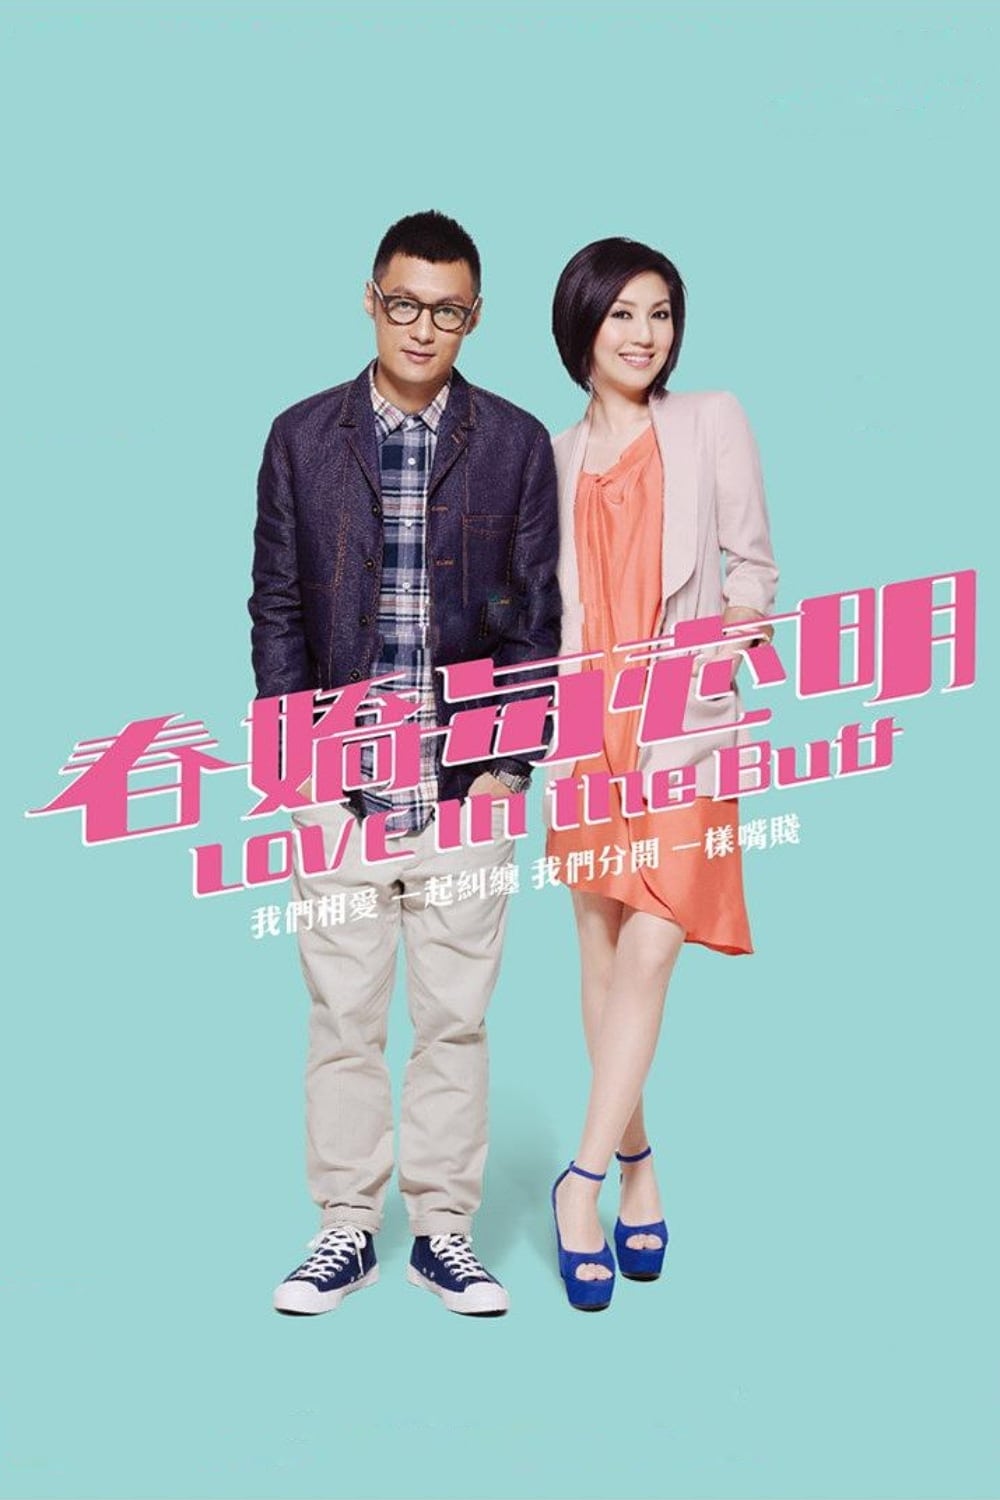 Poster Phim Xuân Kiều Và Chí Minh (Love In The Buff)